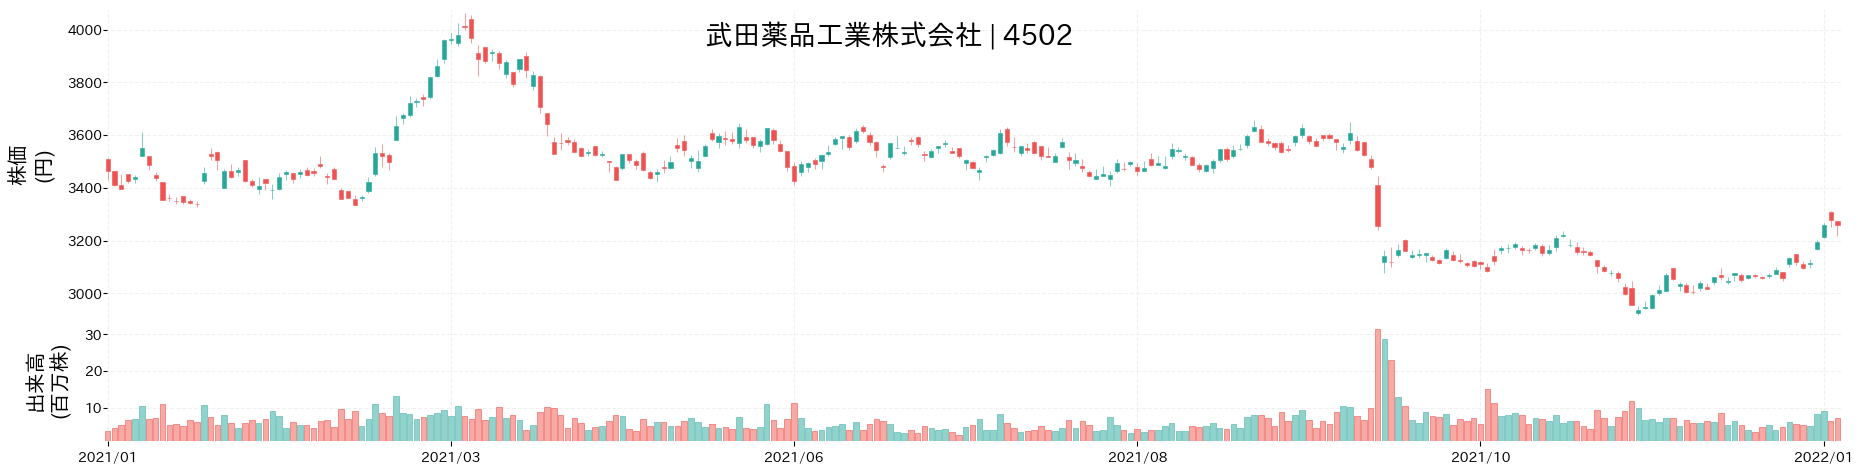 武田薬品工業の株価推移(2021)